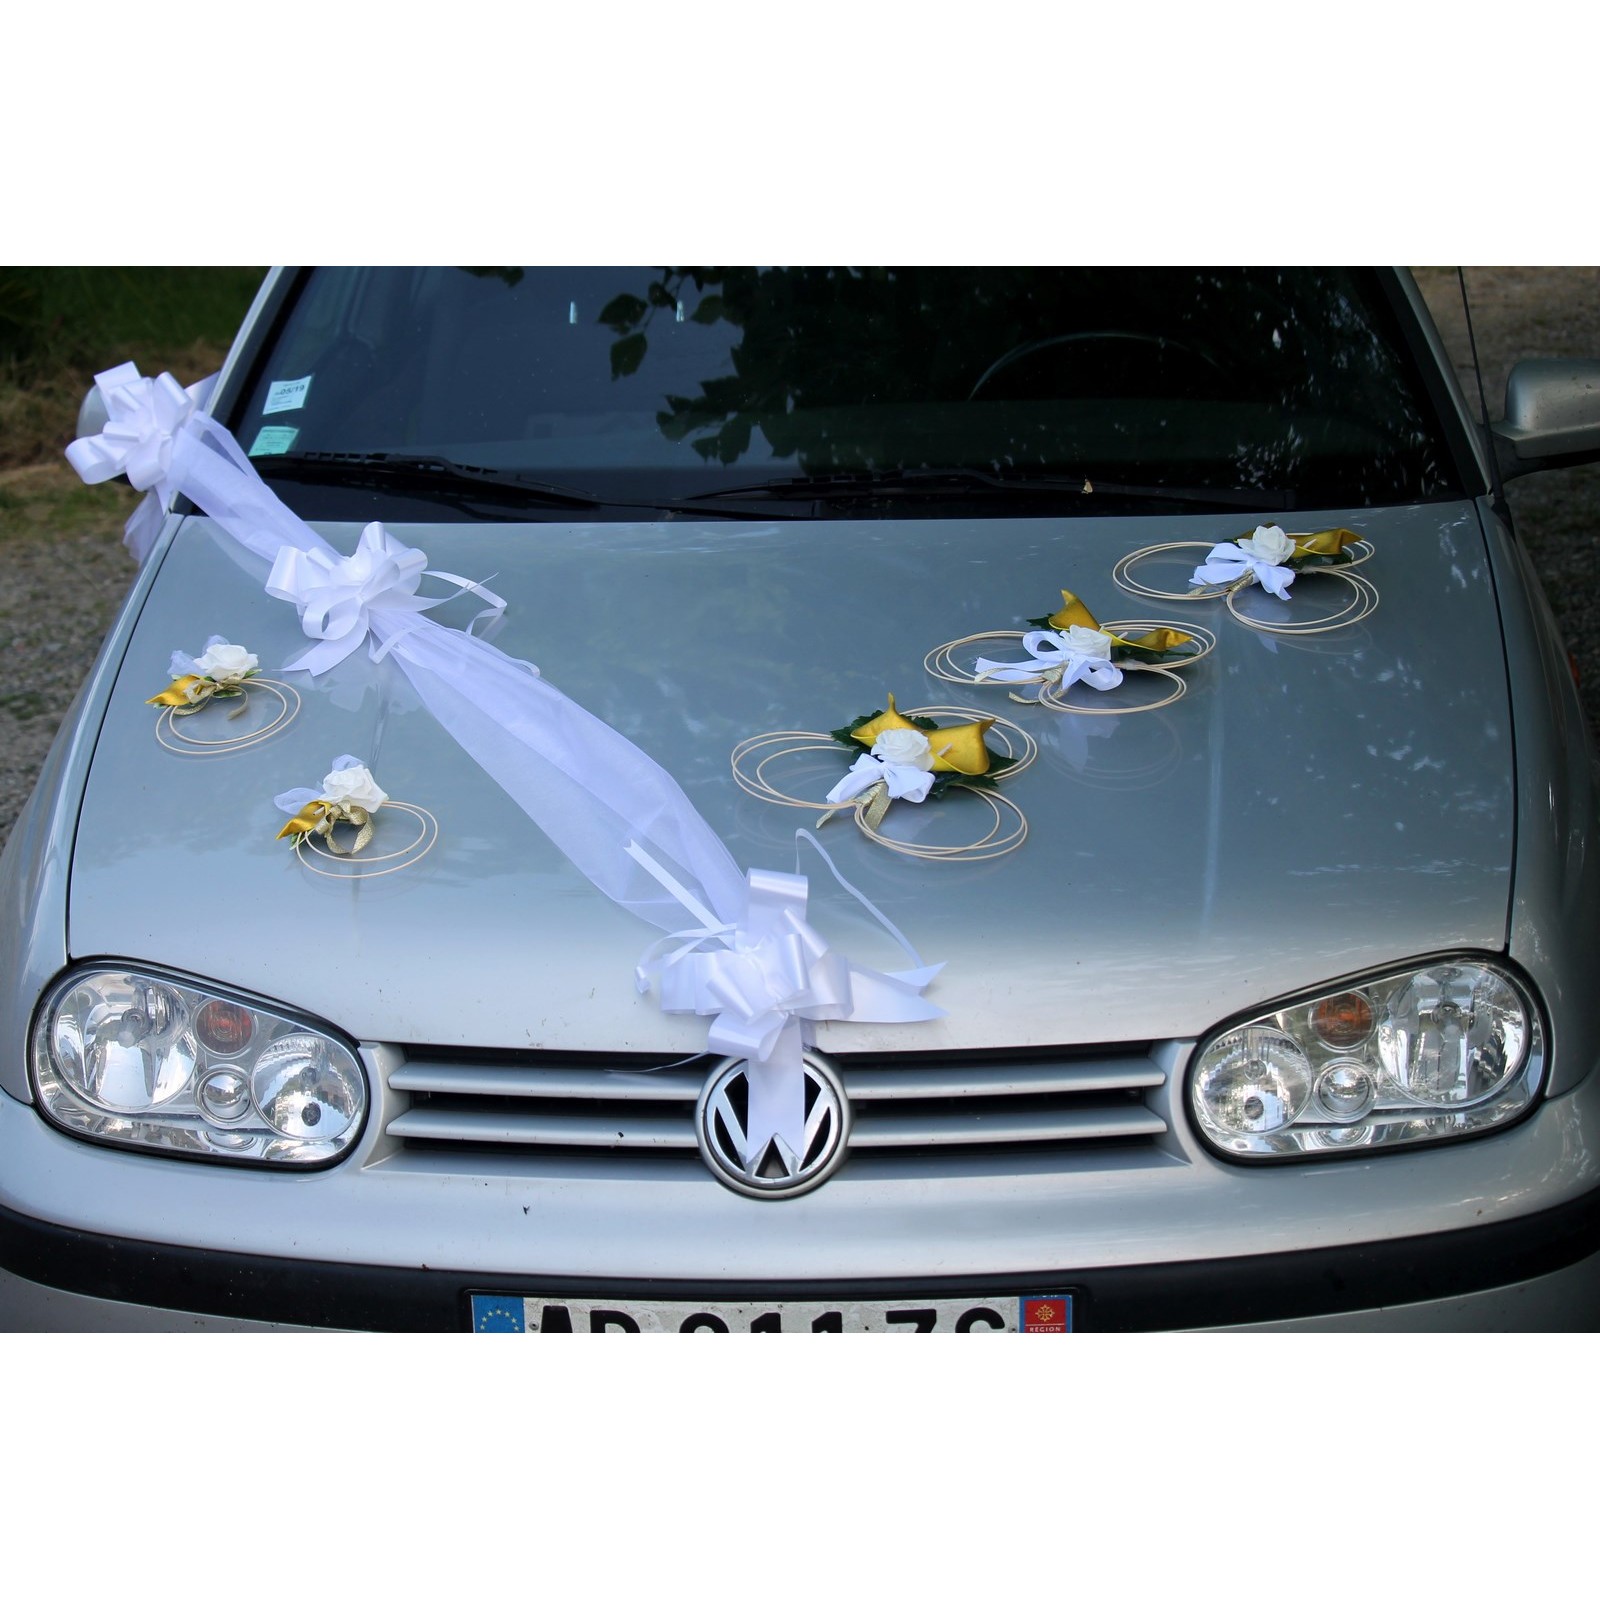 Kit déco voiture pas cher pour décoration voiture mariage - Badaboum